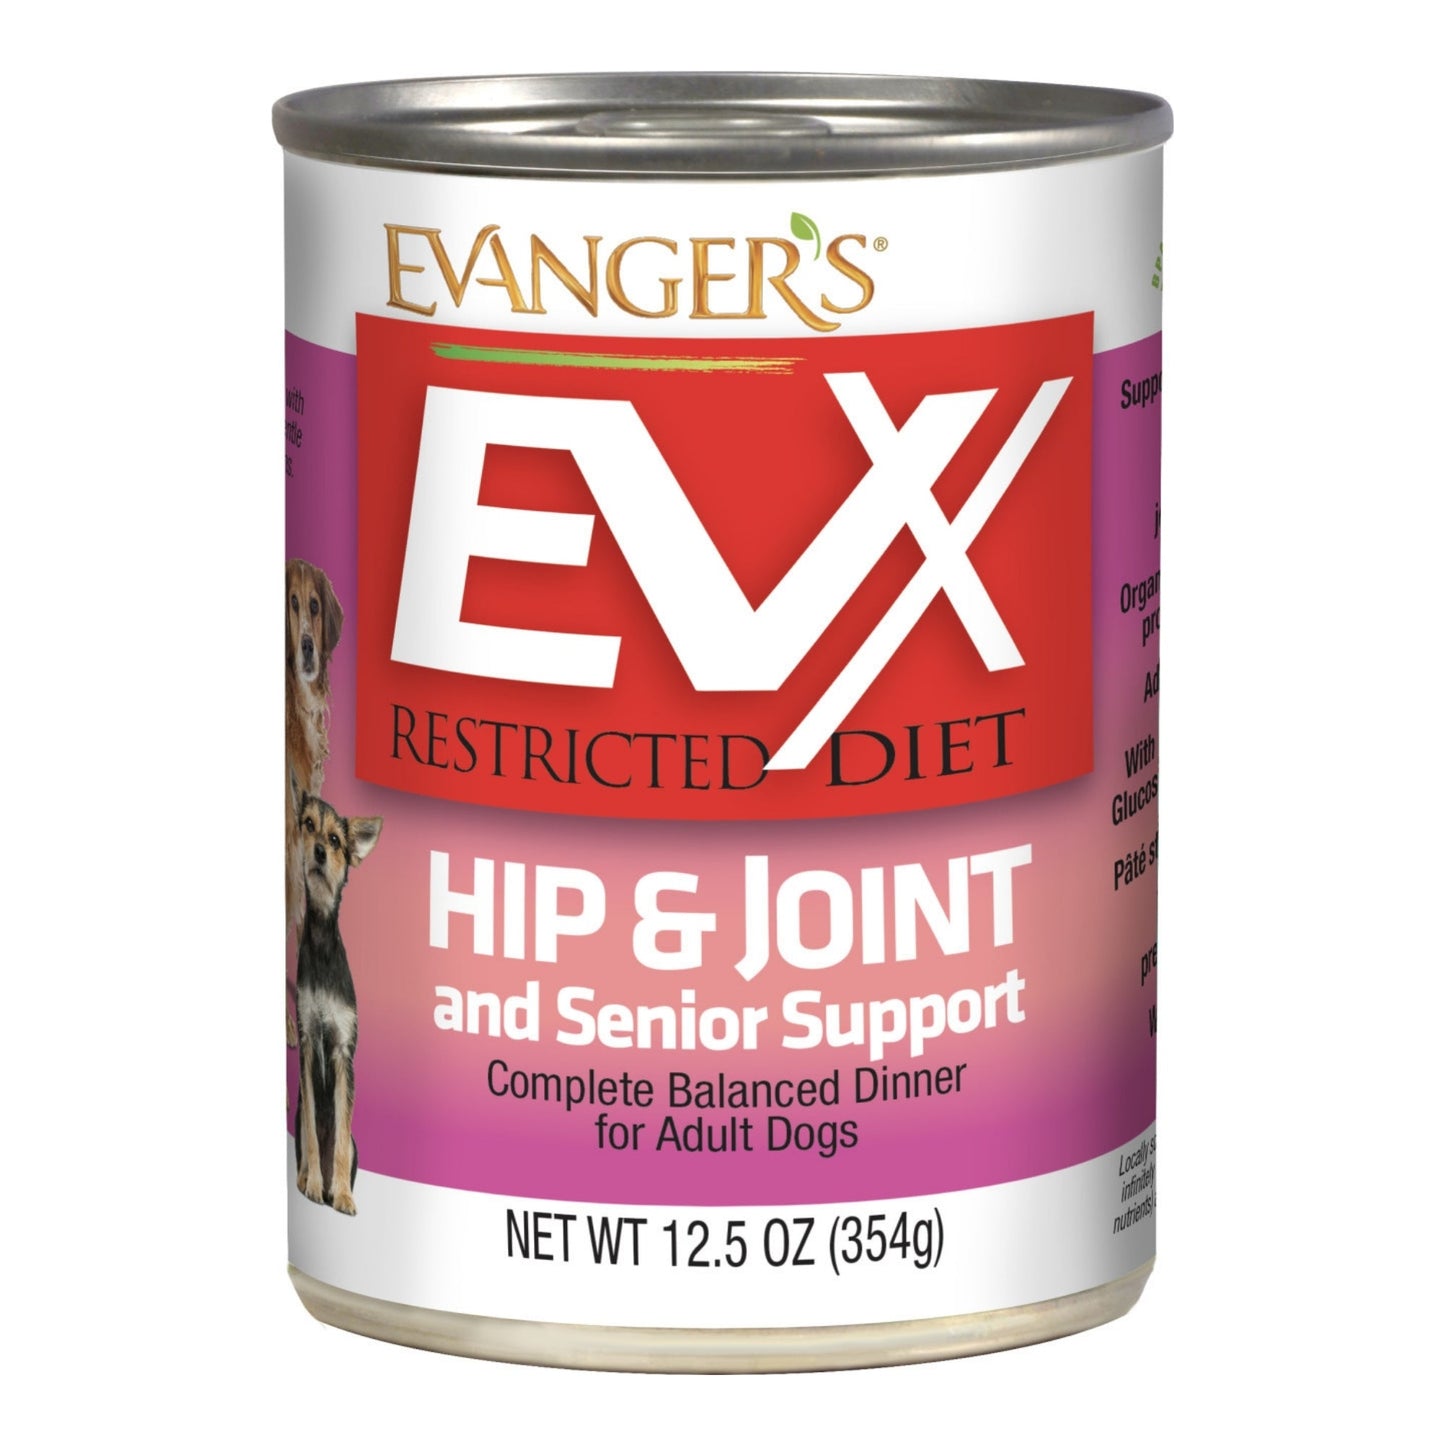 Evanger's EVx Restricted Diet Hip & Joint and Senior Support Wet Dog Food 12.5oz. (Case of 12)